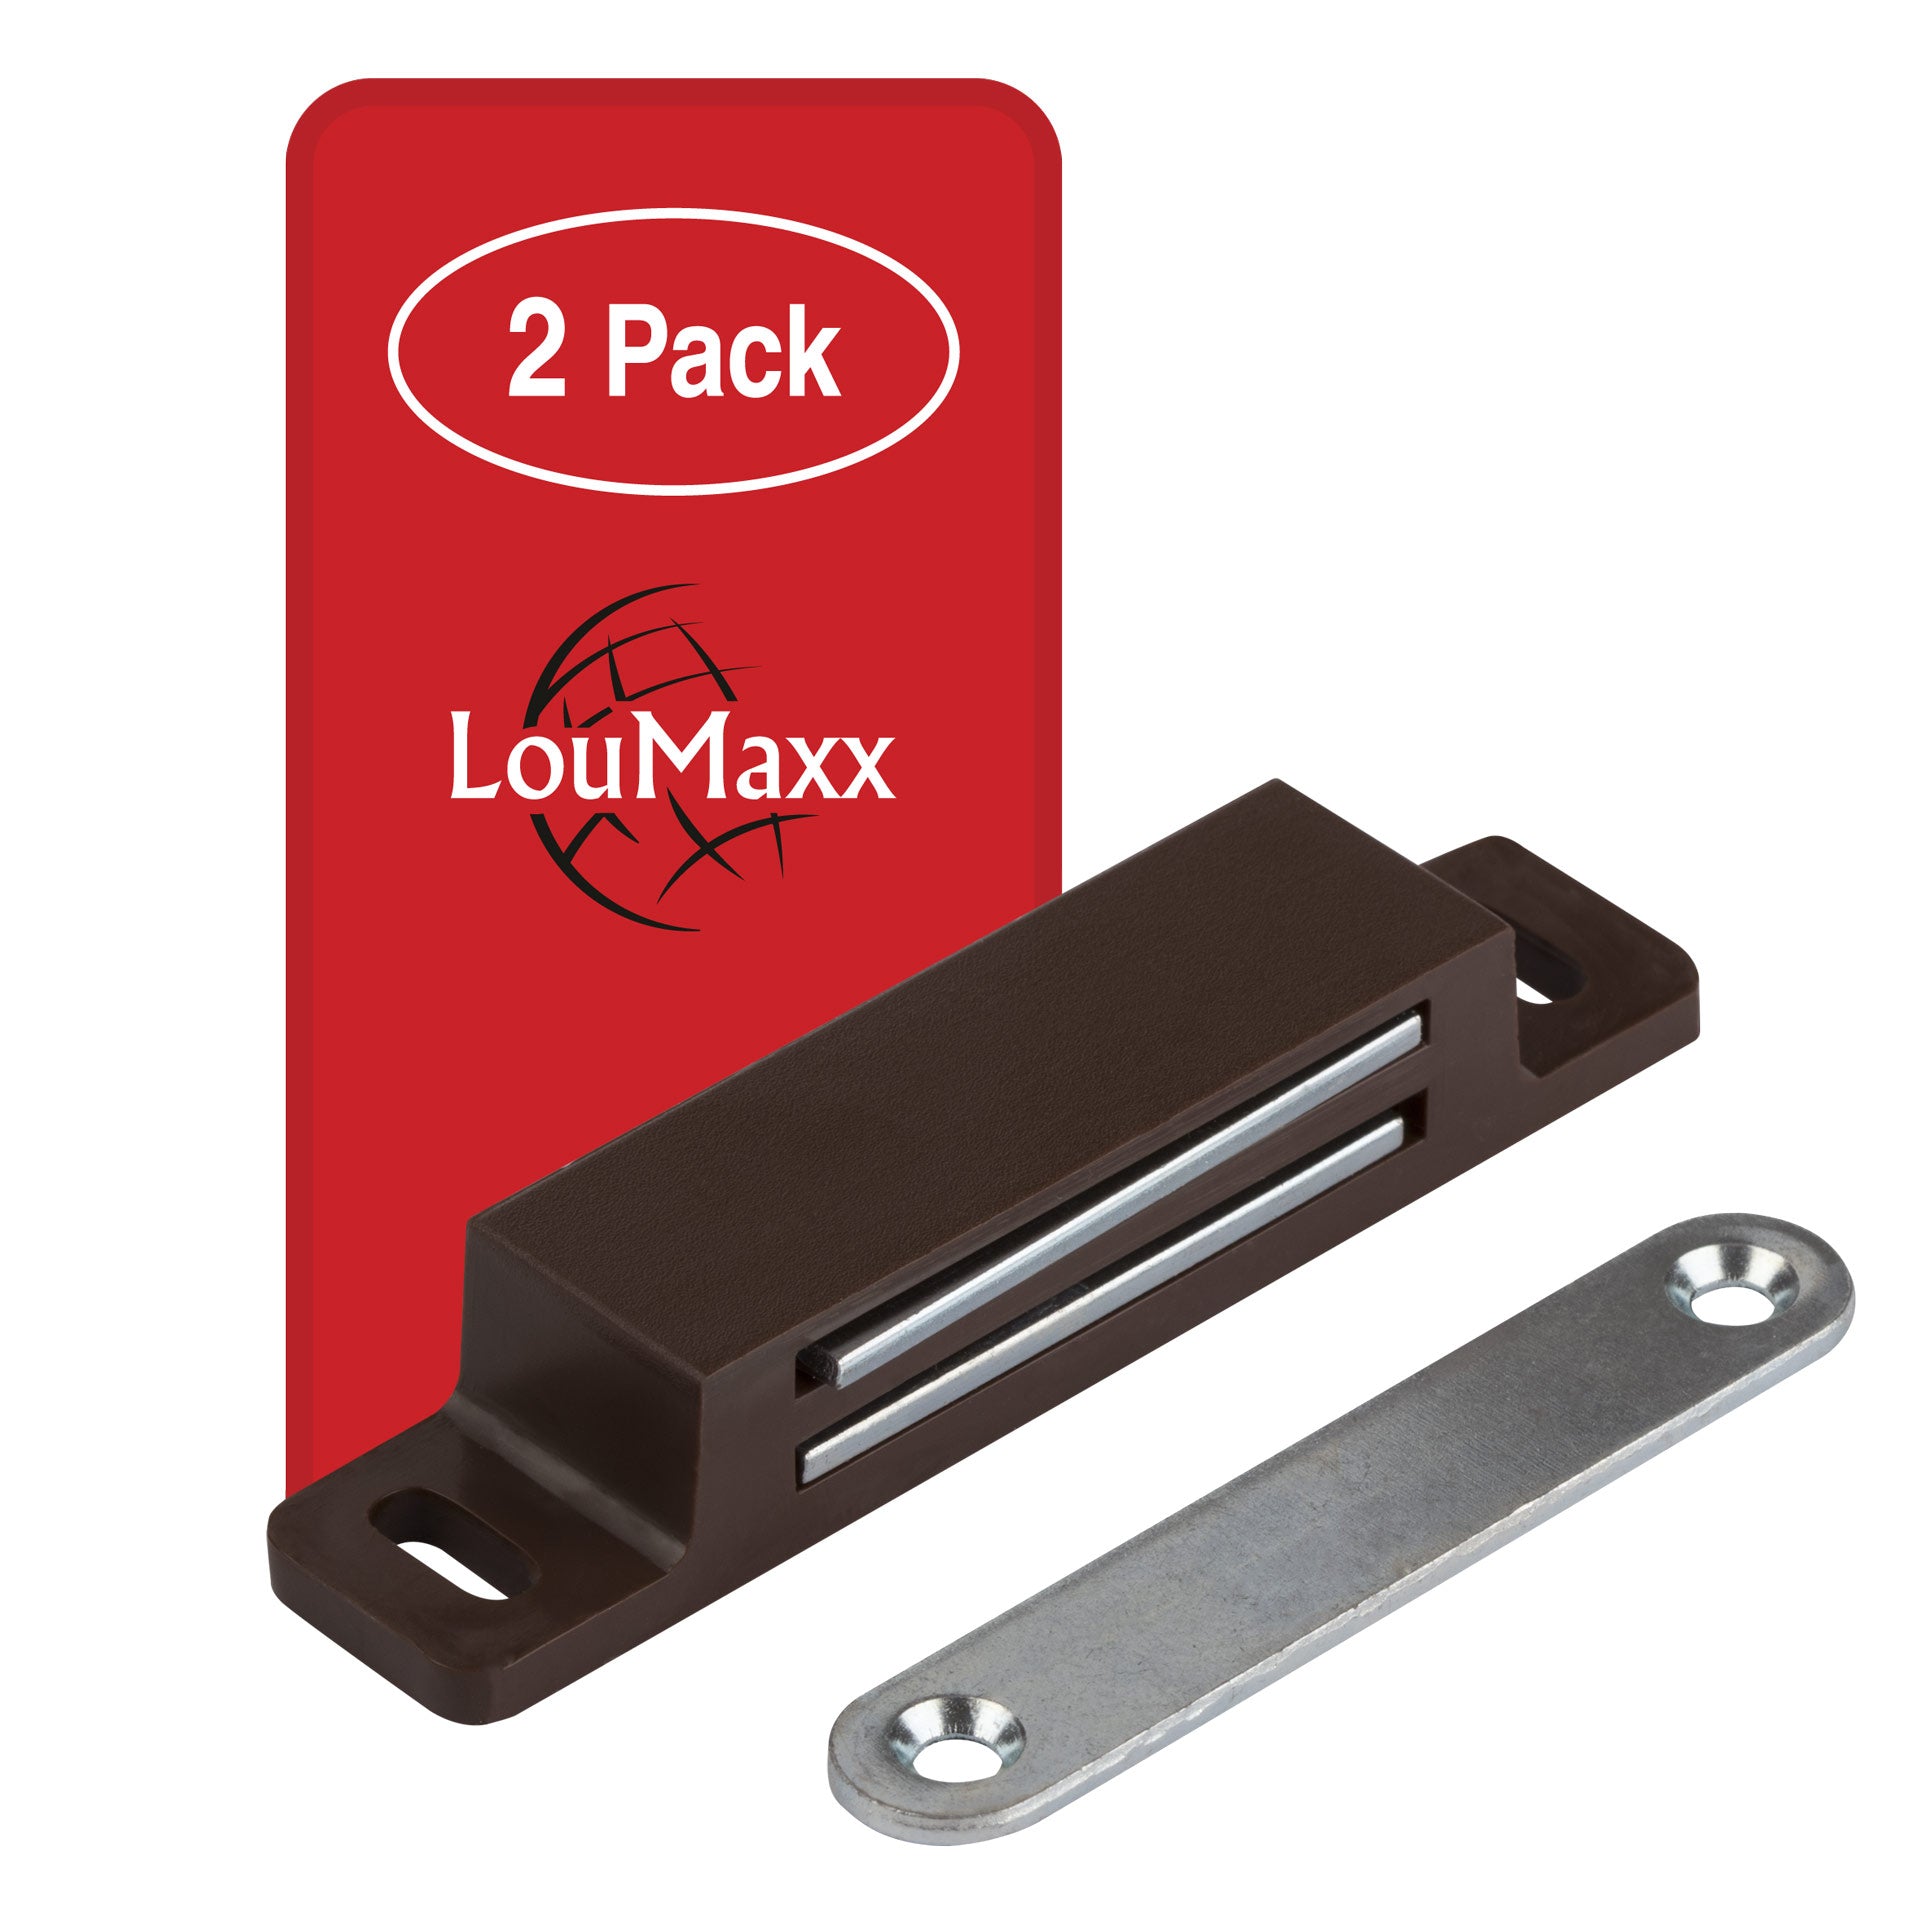 LouMaxx Magnetschnäpper extra stark – Haltekraft 13kg – 2er Set in braun Magnetverschluss – Magnetschloss – Türmagnet – Möbelmagnet – Schranktür